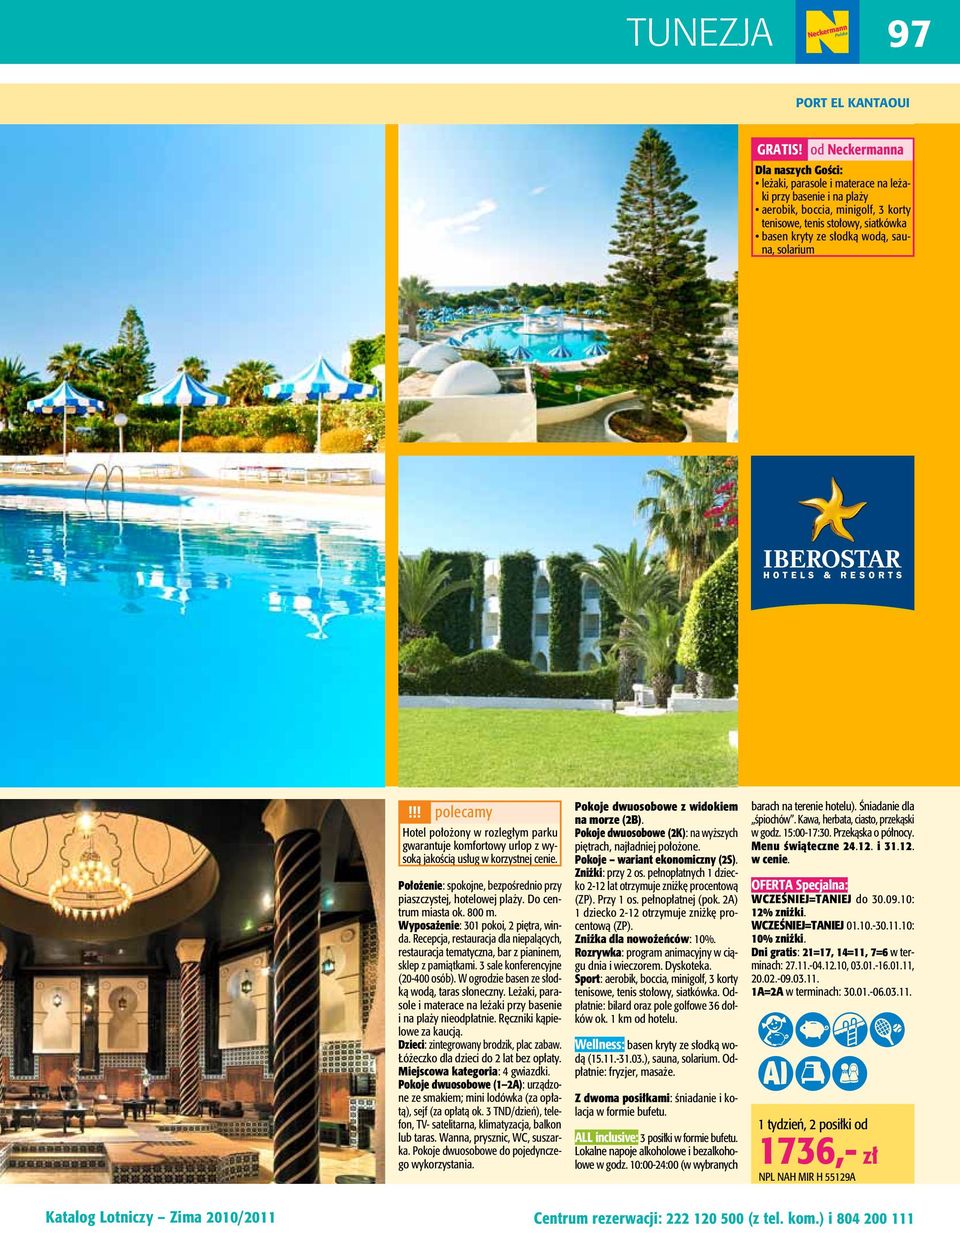 sauna, solarium!!! polecamy Hotel położony w rozległym parku gwarantuje komfortowy urlop z wysoką jakością usług w korzystnej cenie.